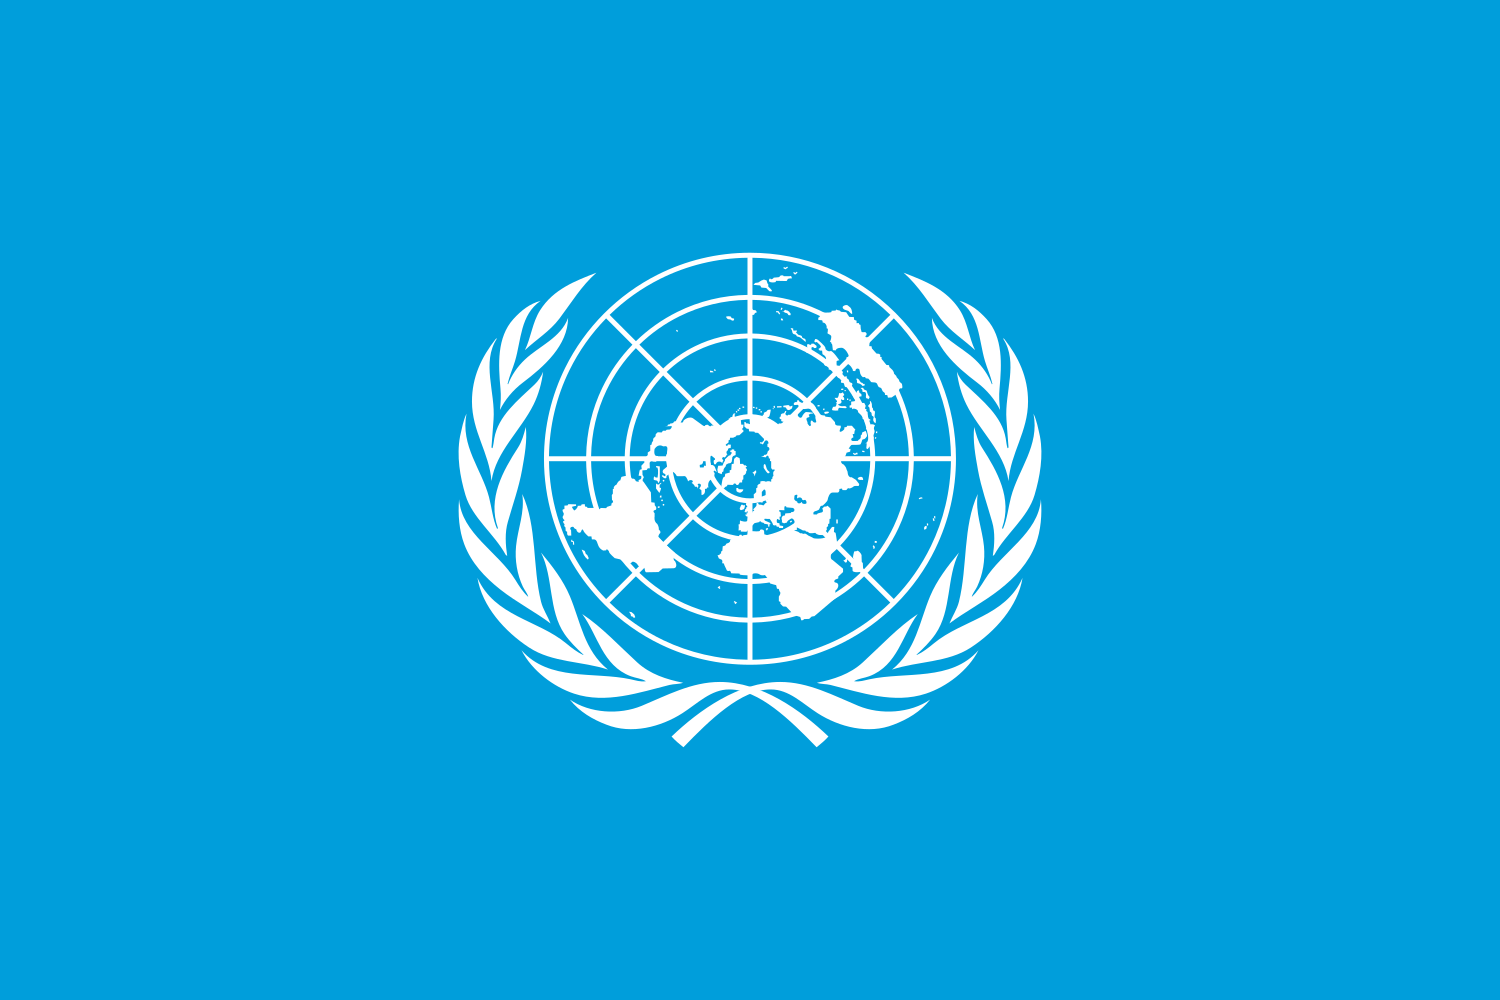 More information about "ΟΗΕ: 67 κράτη υπέγραψαν τη Συνθήκη για την Ανοικτή Θάλασσα"